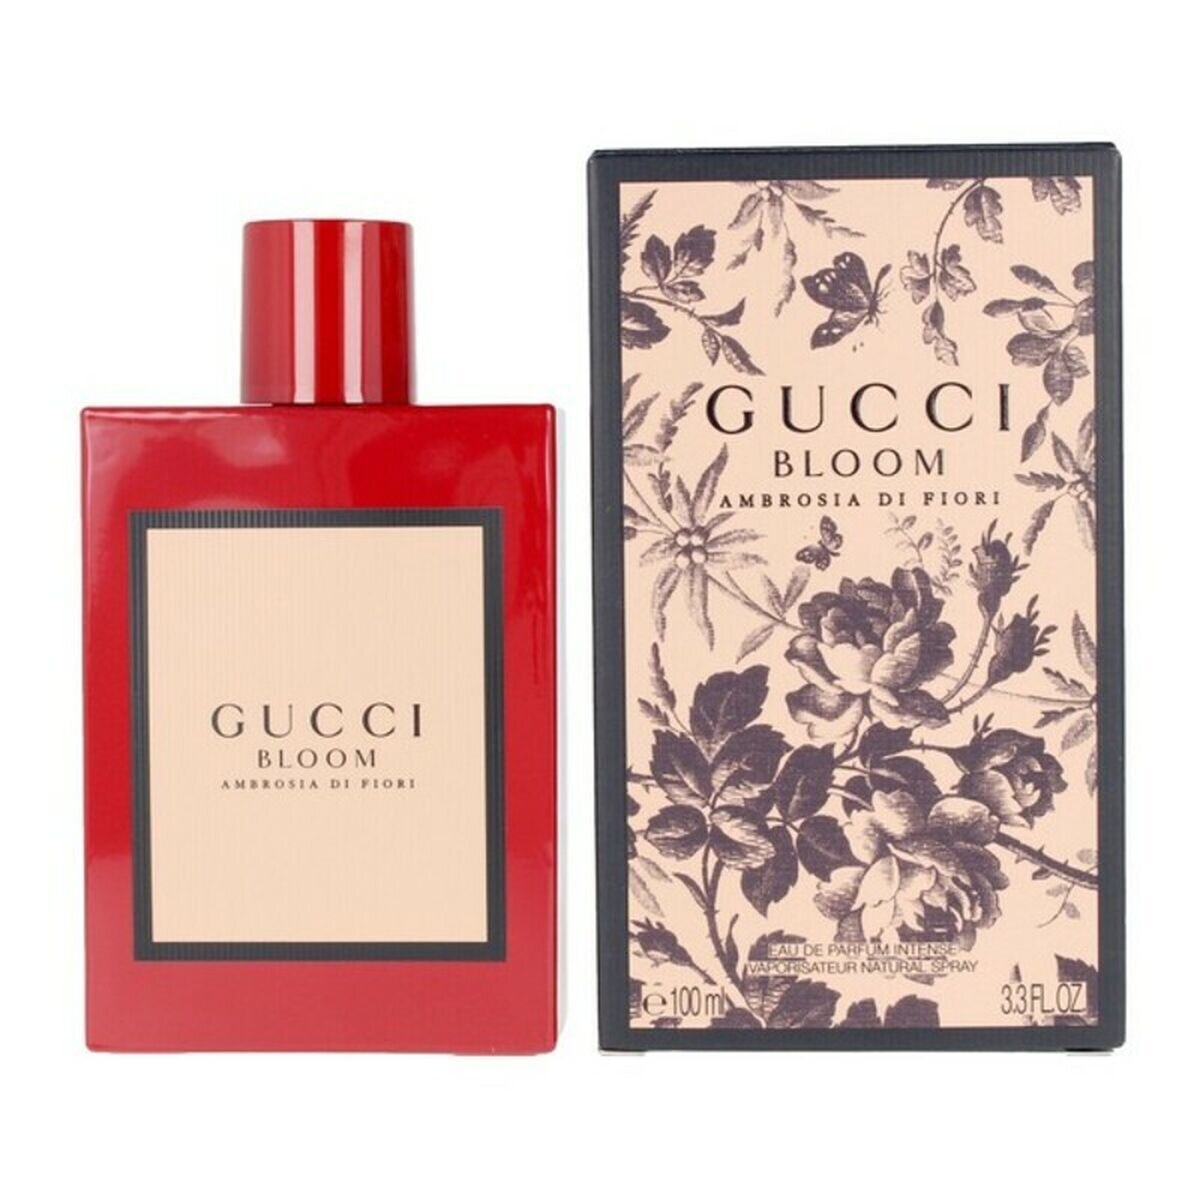 Gucci Bloom Ambrosia Di Fiori Eau De Parfum 100 ml